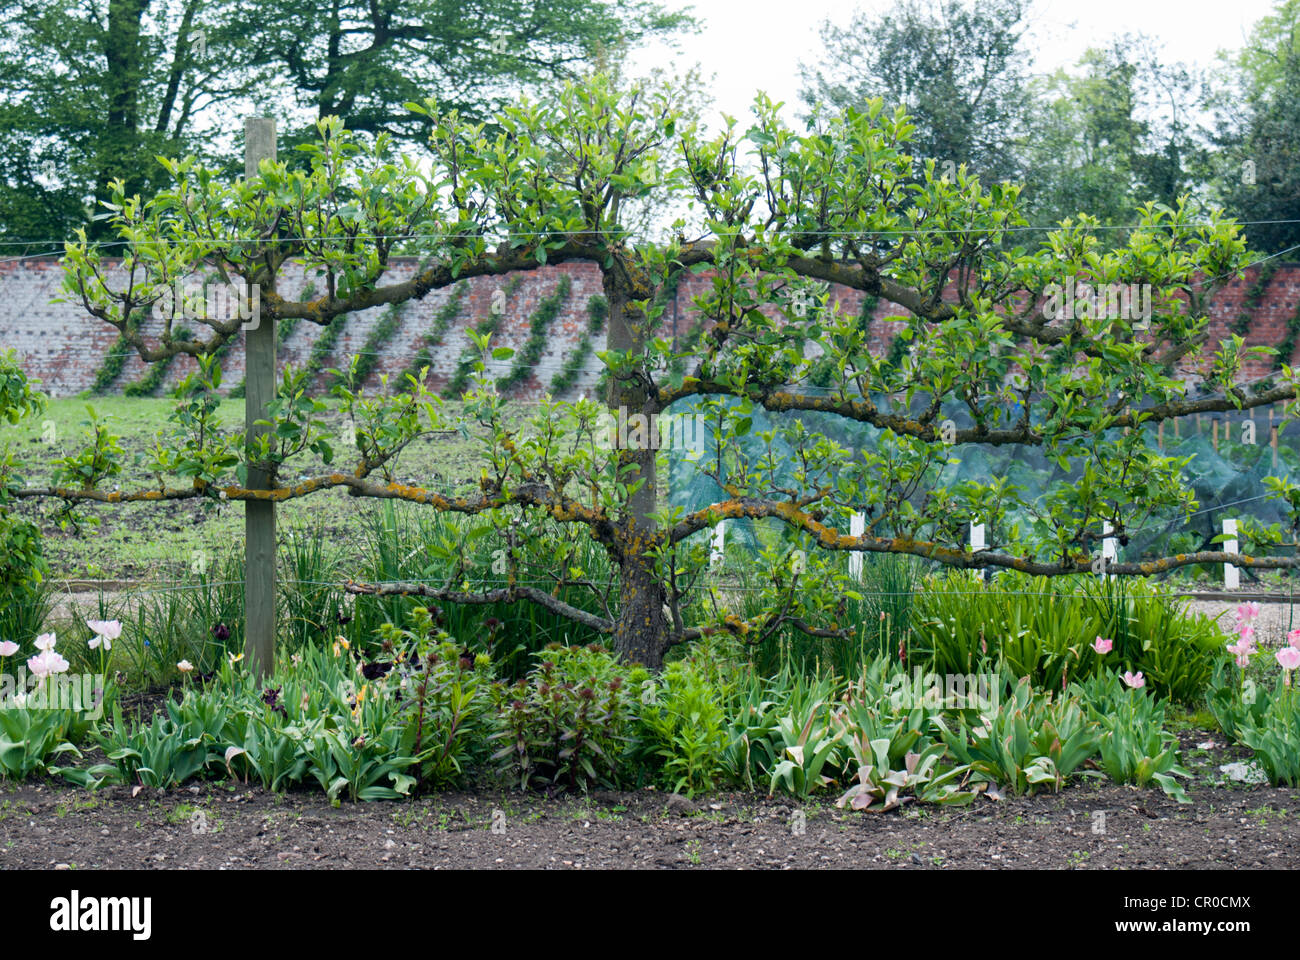 Apple a spalliera albero che cresce in un paese walled garden Foto Stock